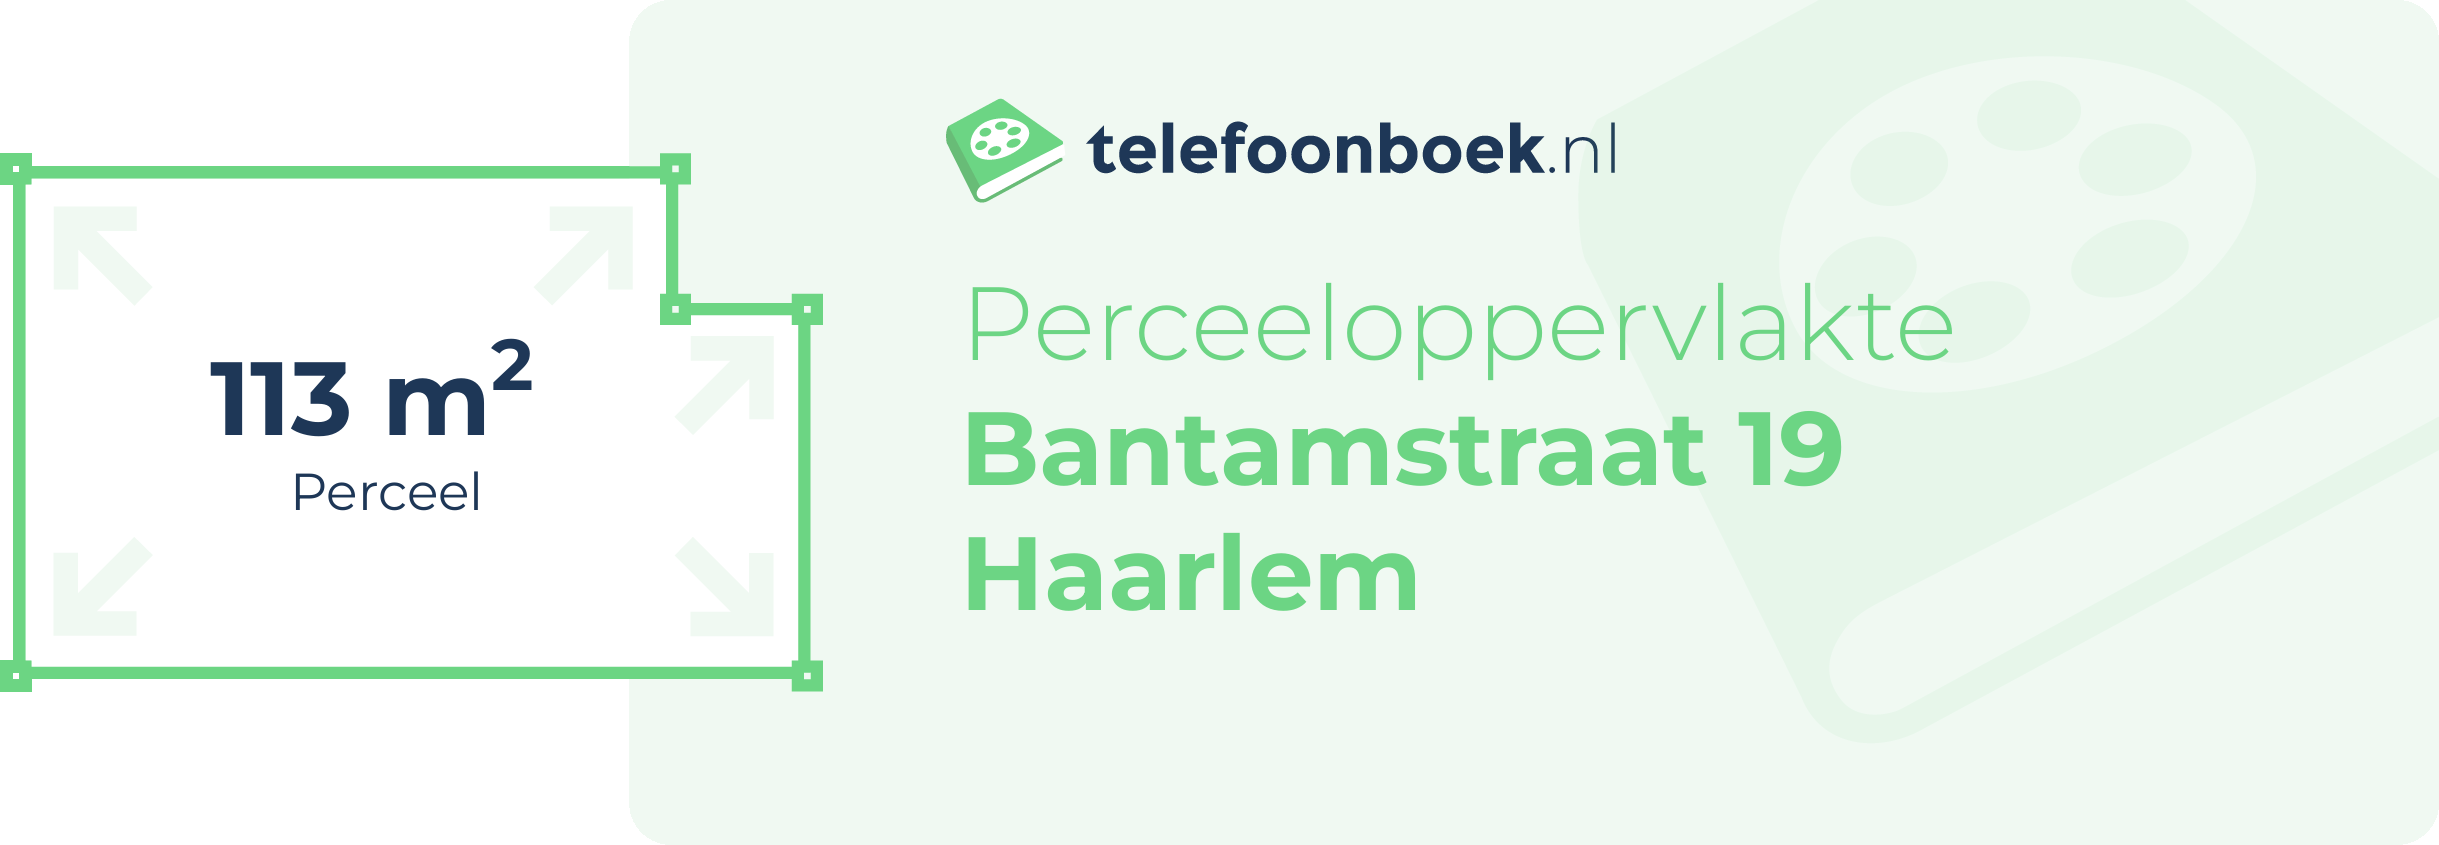 Perceeloppervlakte Bantamstraat 19 Haarlem